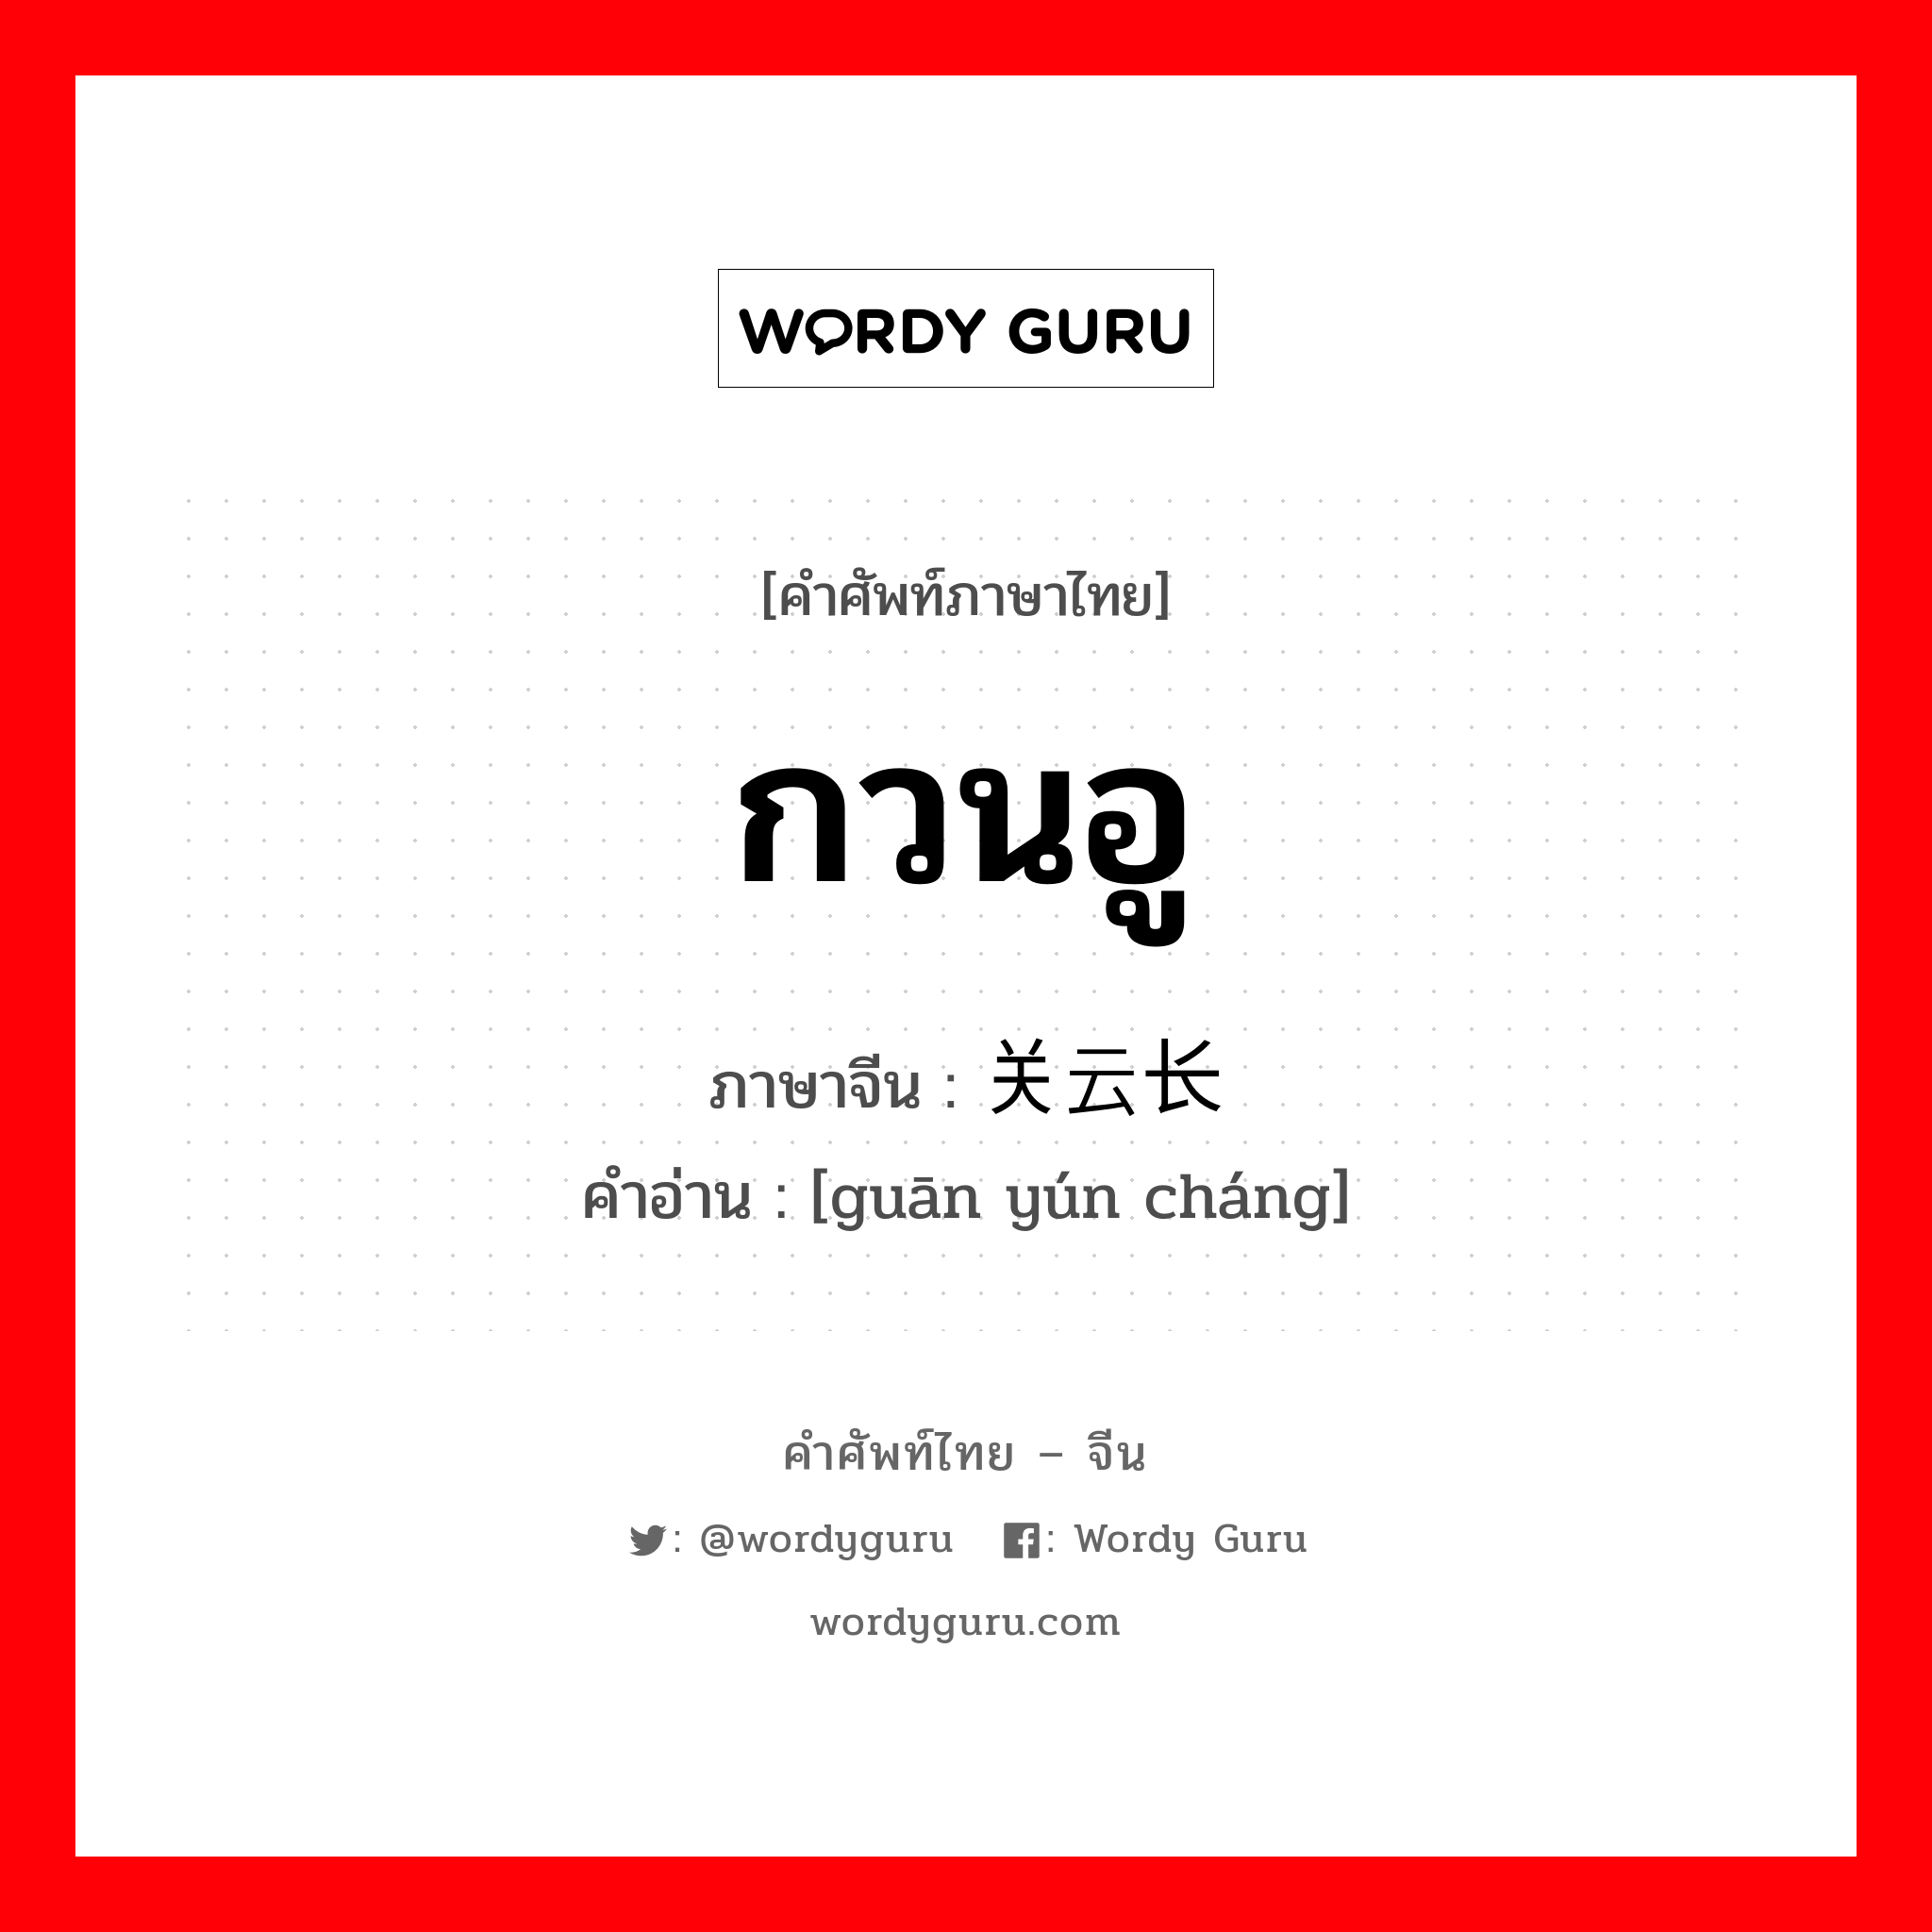 กวนอู ภาษาจีนคืออะไร, คำศัพท์ภาษาไทย - จีน กวนอู ภาษาจีน 关云长 คำอ่าน [guān yún cháng]